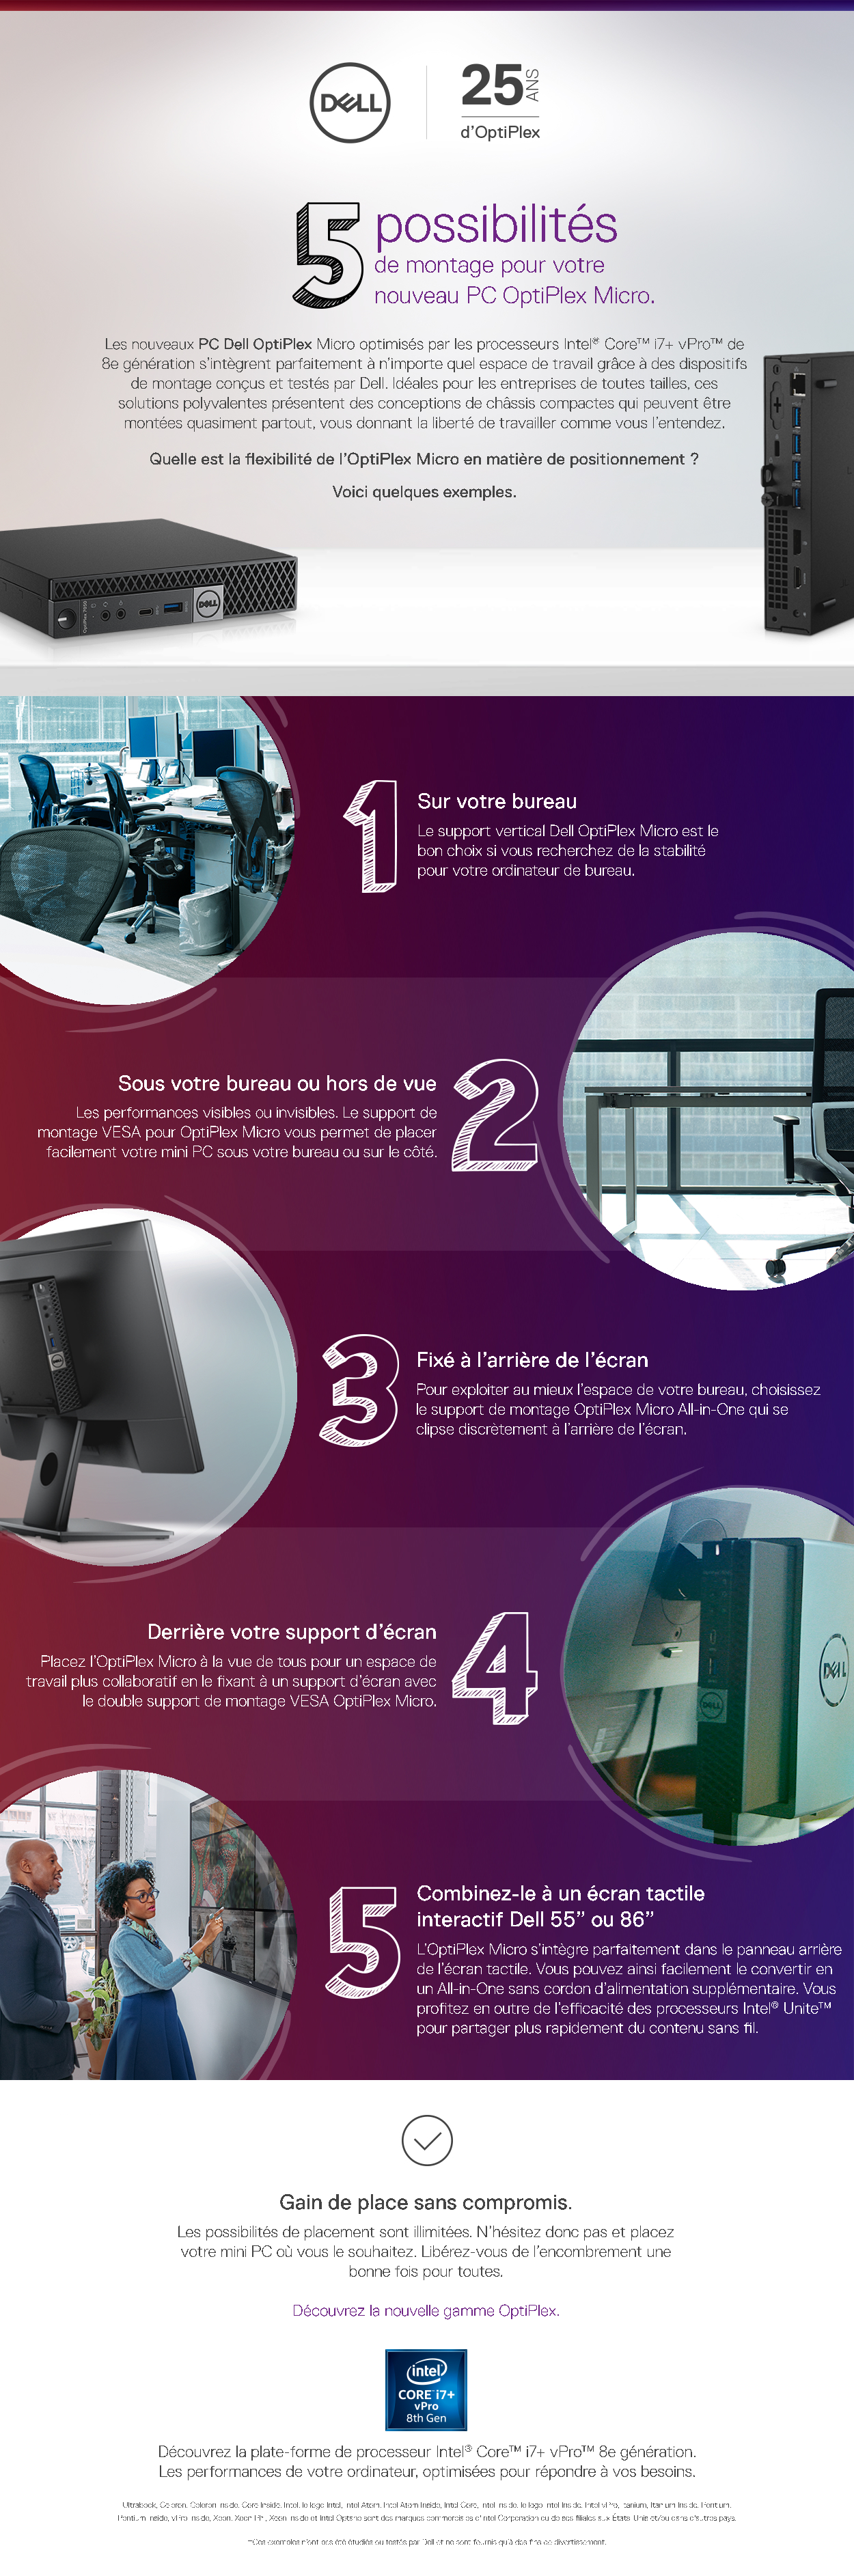 5 possibilités de montage pour votre nouveau PC OptiPlex Micro.